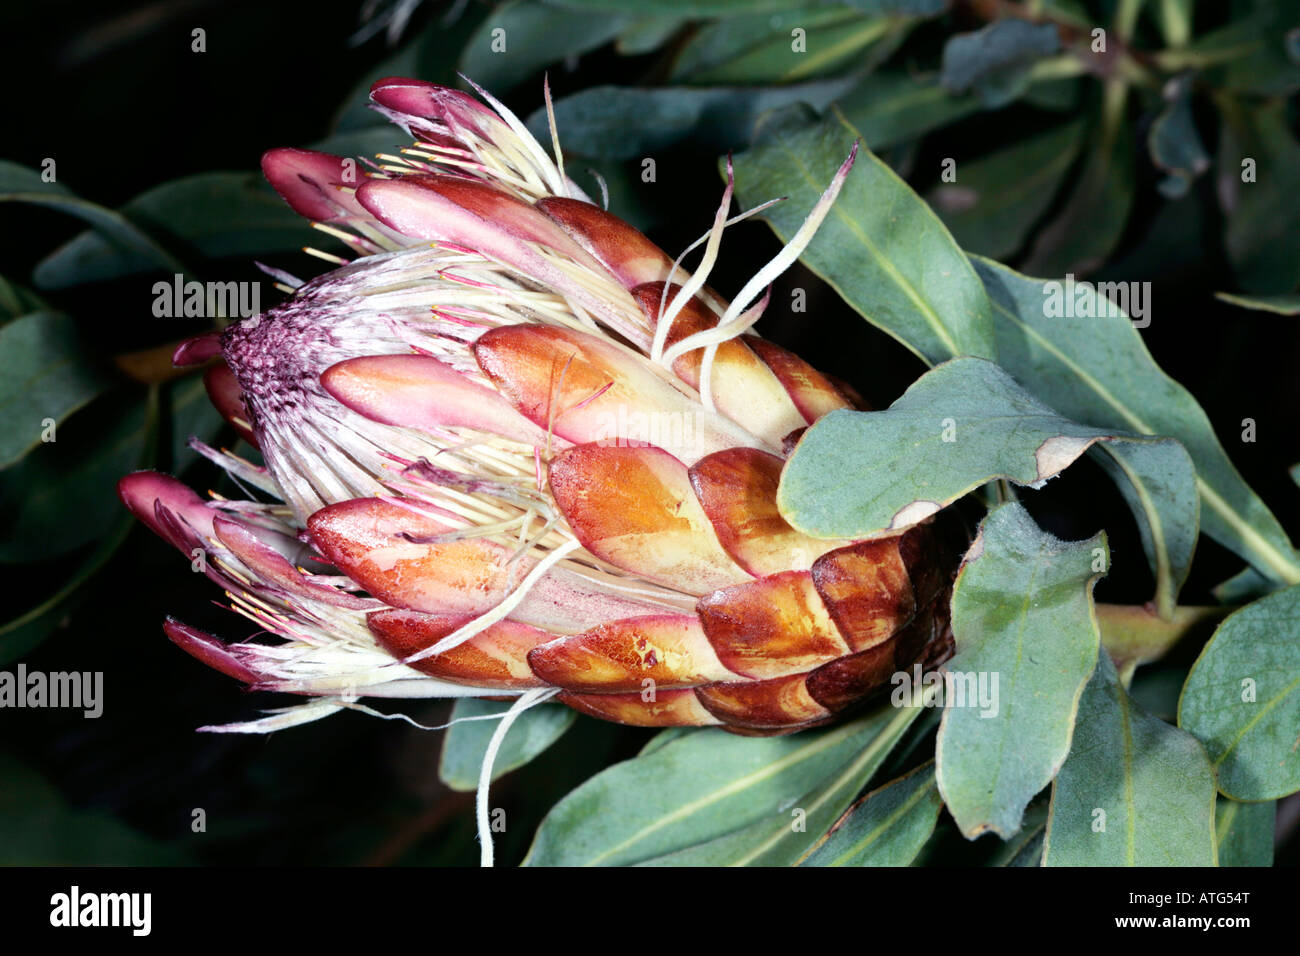 Oleander-leaved Protea/ Long leaved Sugarbush - Protea neriifolia - Family Proteaceae Stock Photo